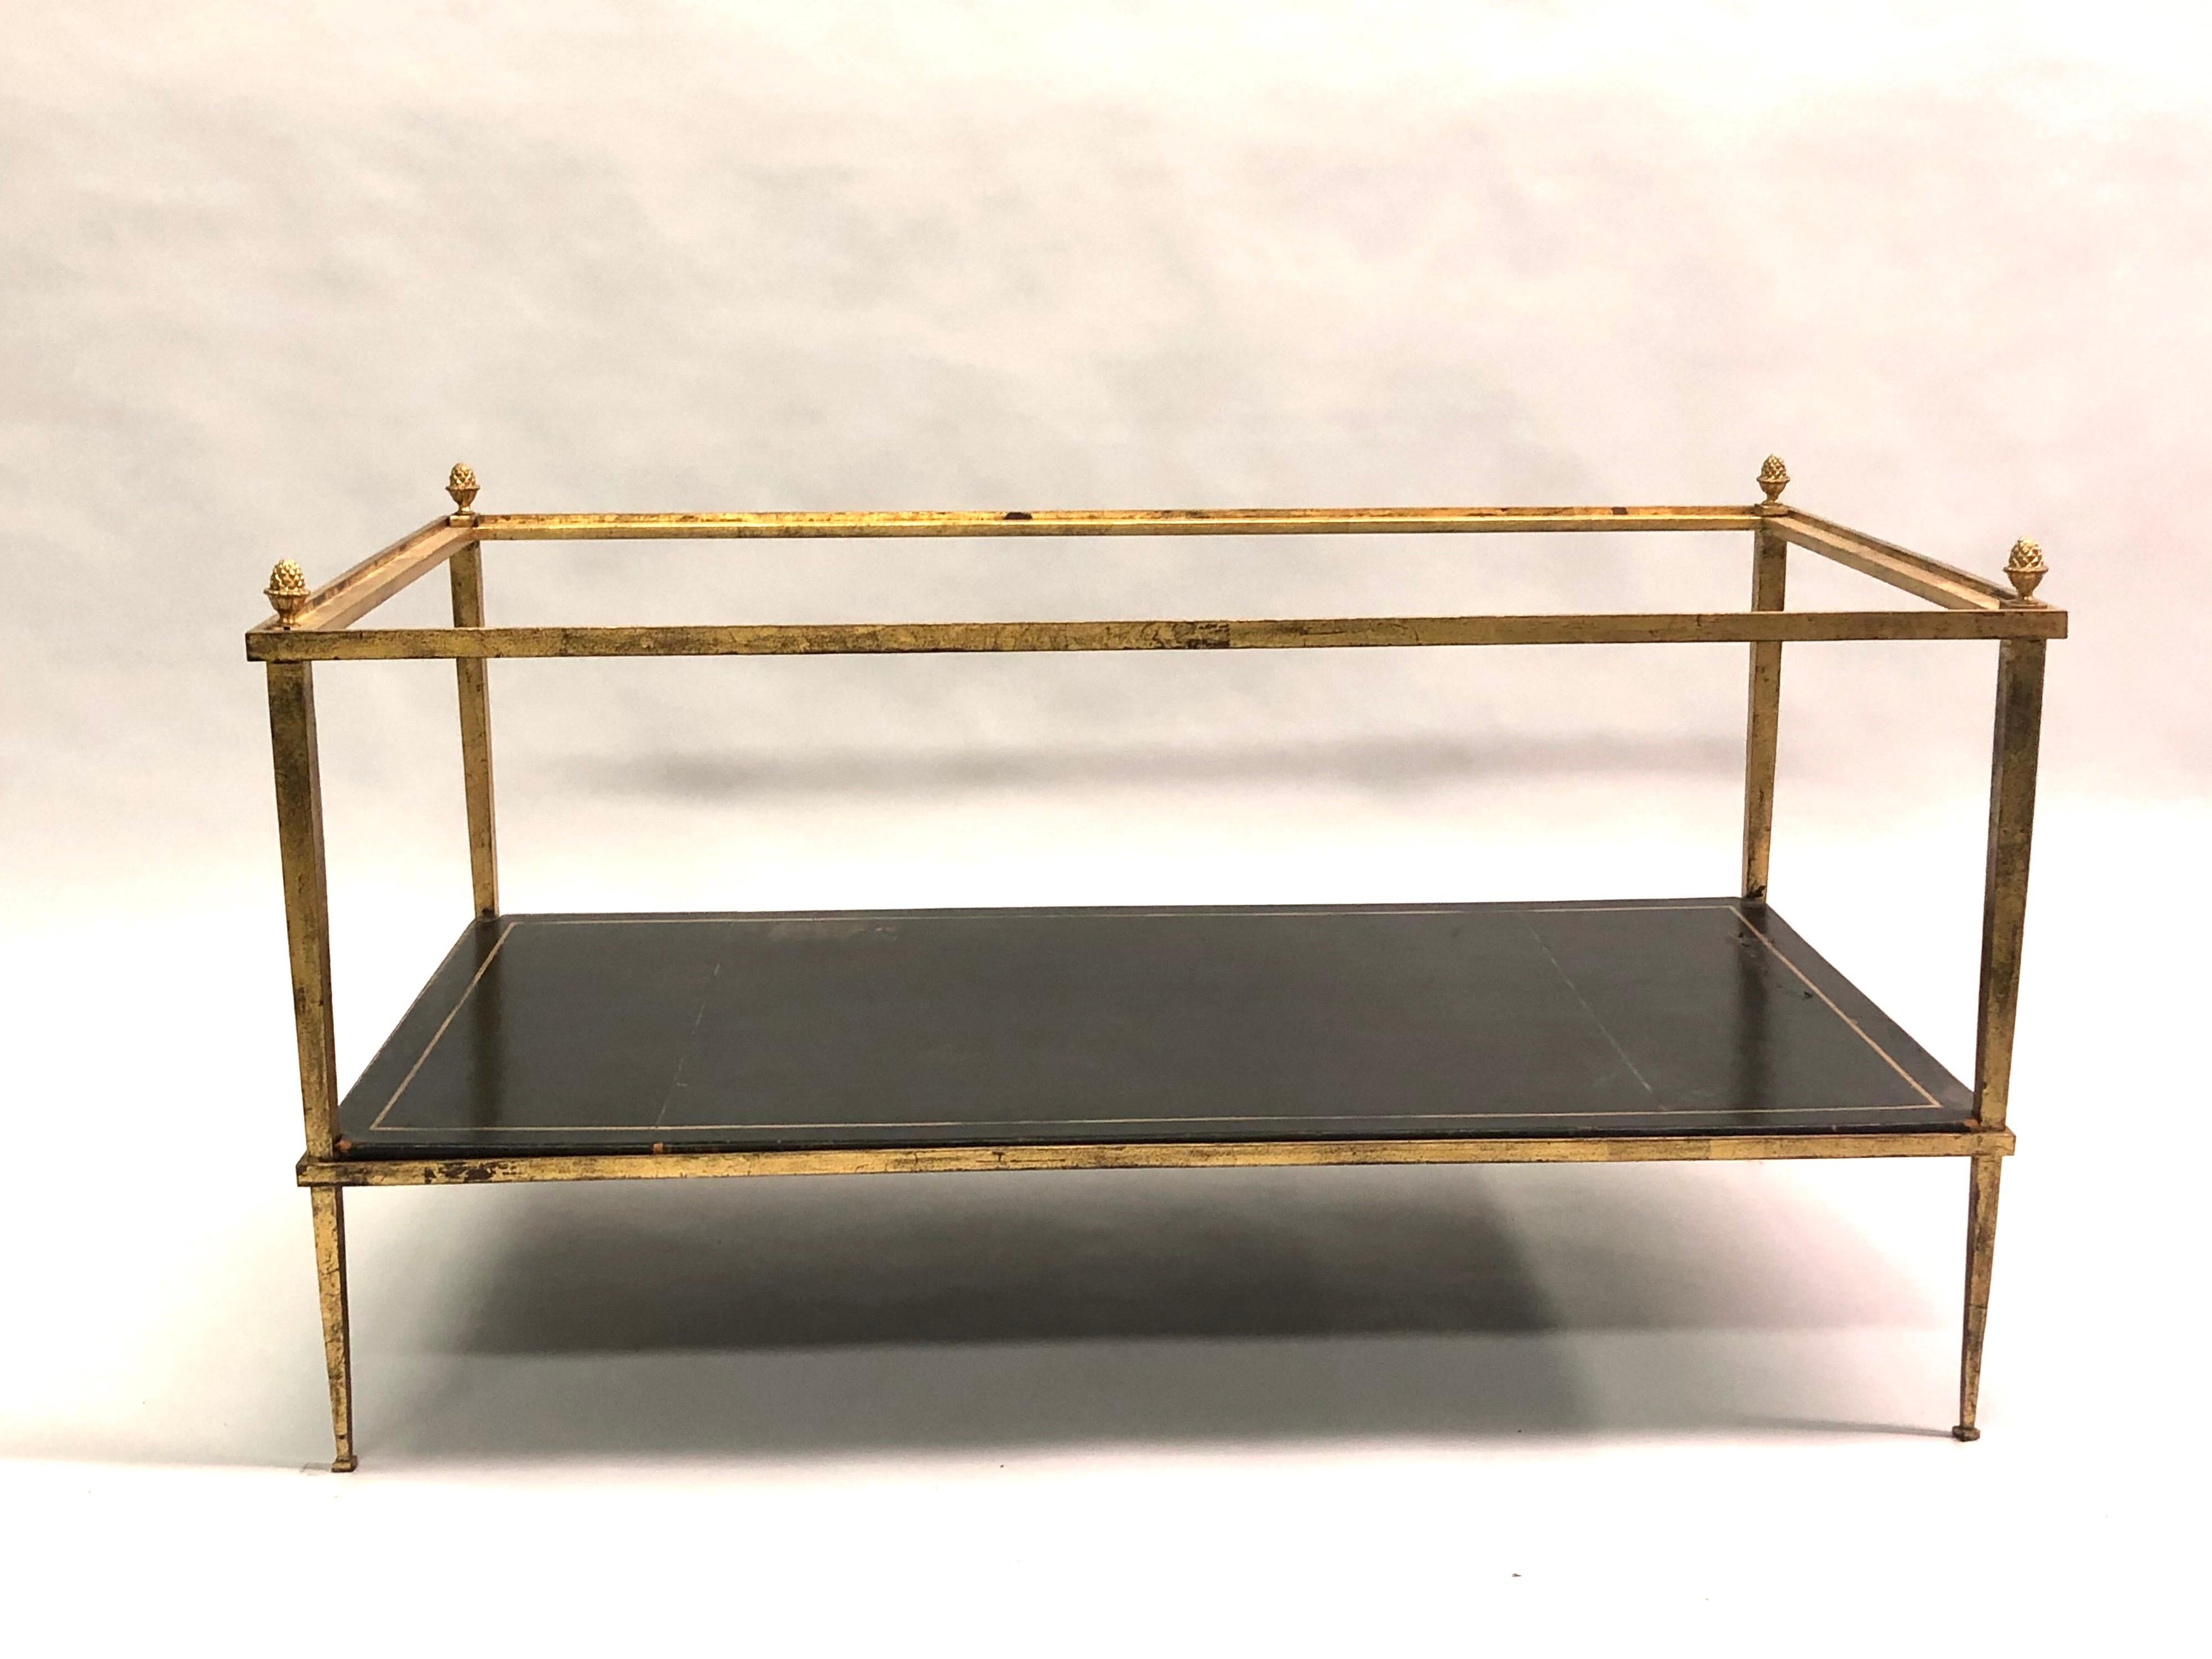 Table basse néoclassique moderne à double niveau, fabriquée par la Maison Ramsay pour la Maison Jansen, en fer doré, aux lignes délicates et aux pieds fuselés. La table est dotée d'un niveau inférieur en cuir gaufré or, d'un niveau supérieur en